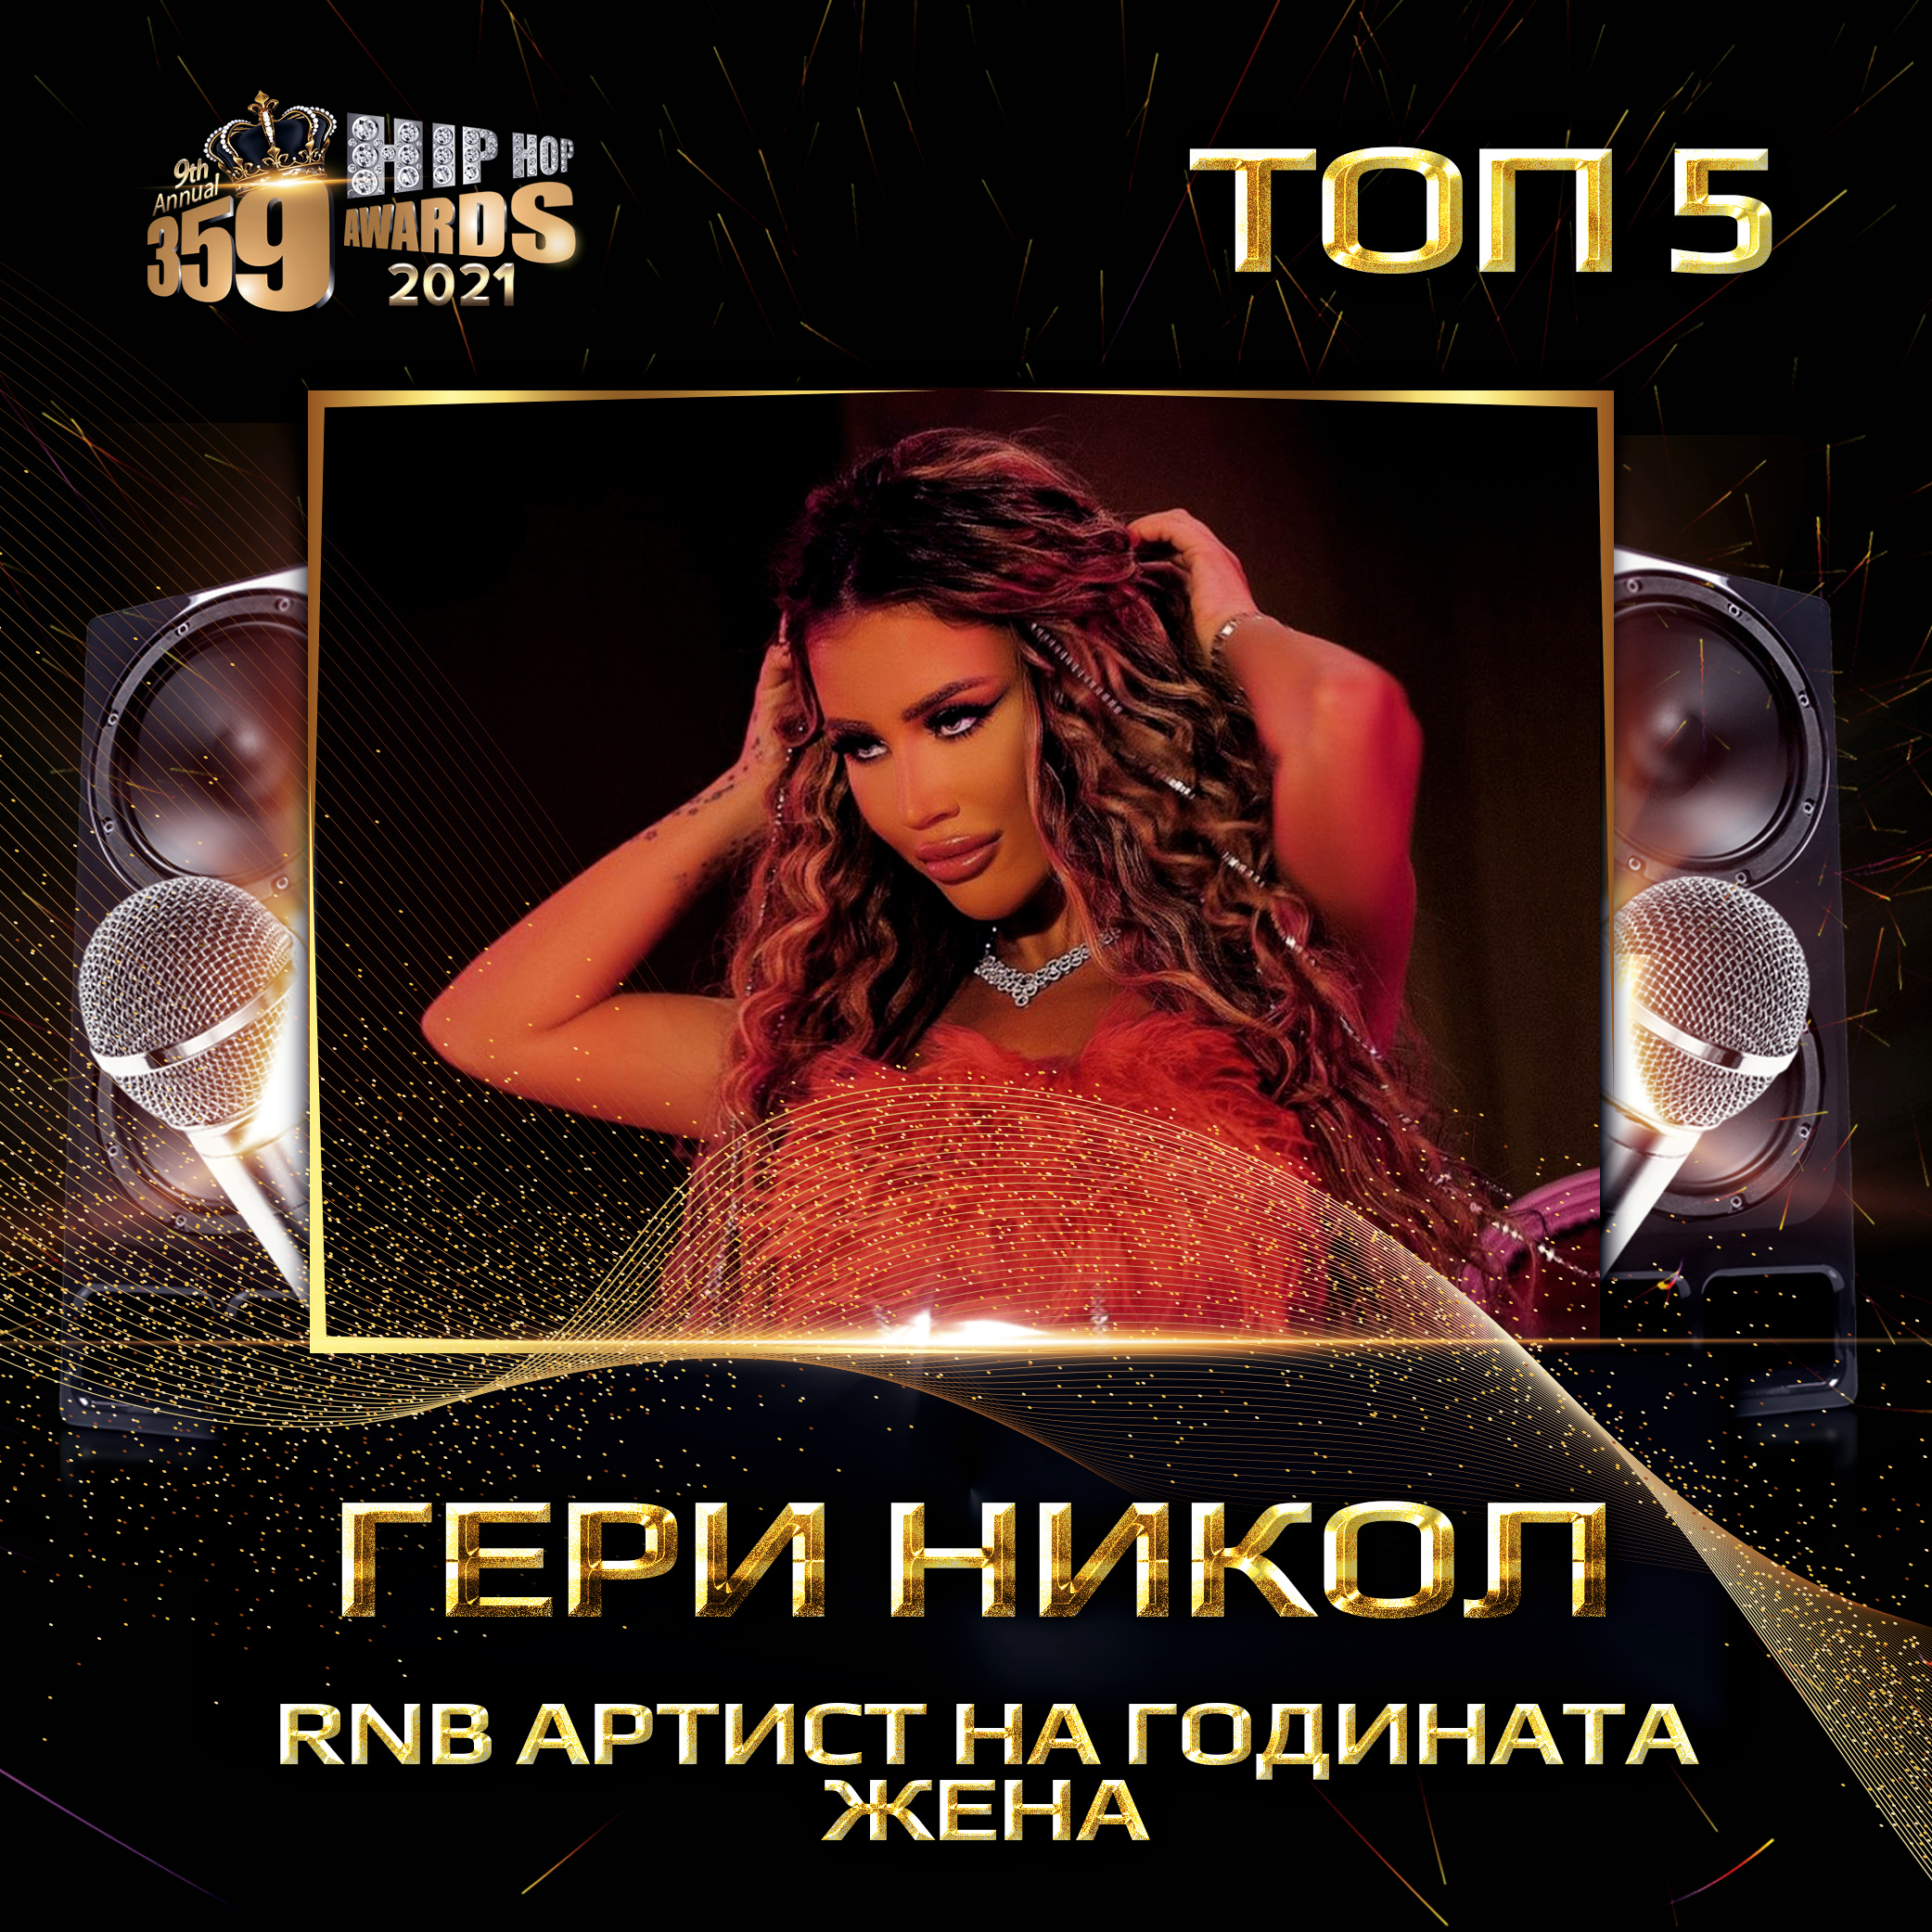 top 5  359 awards 2021  rnb artist na godinata zhena geri nikol - Най-добър RNB артист 2020 / Жена